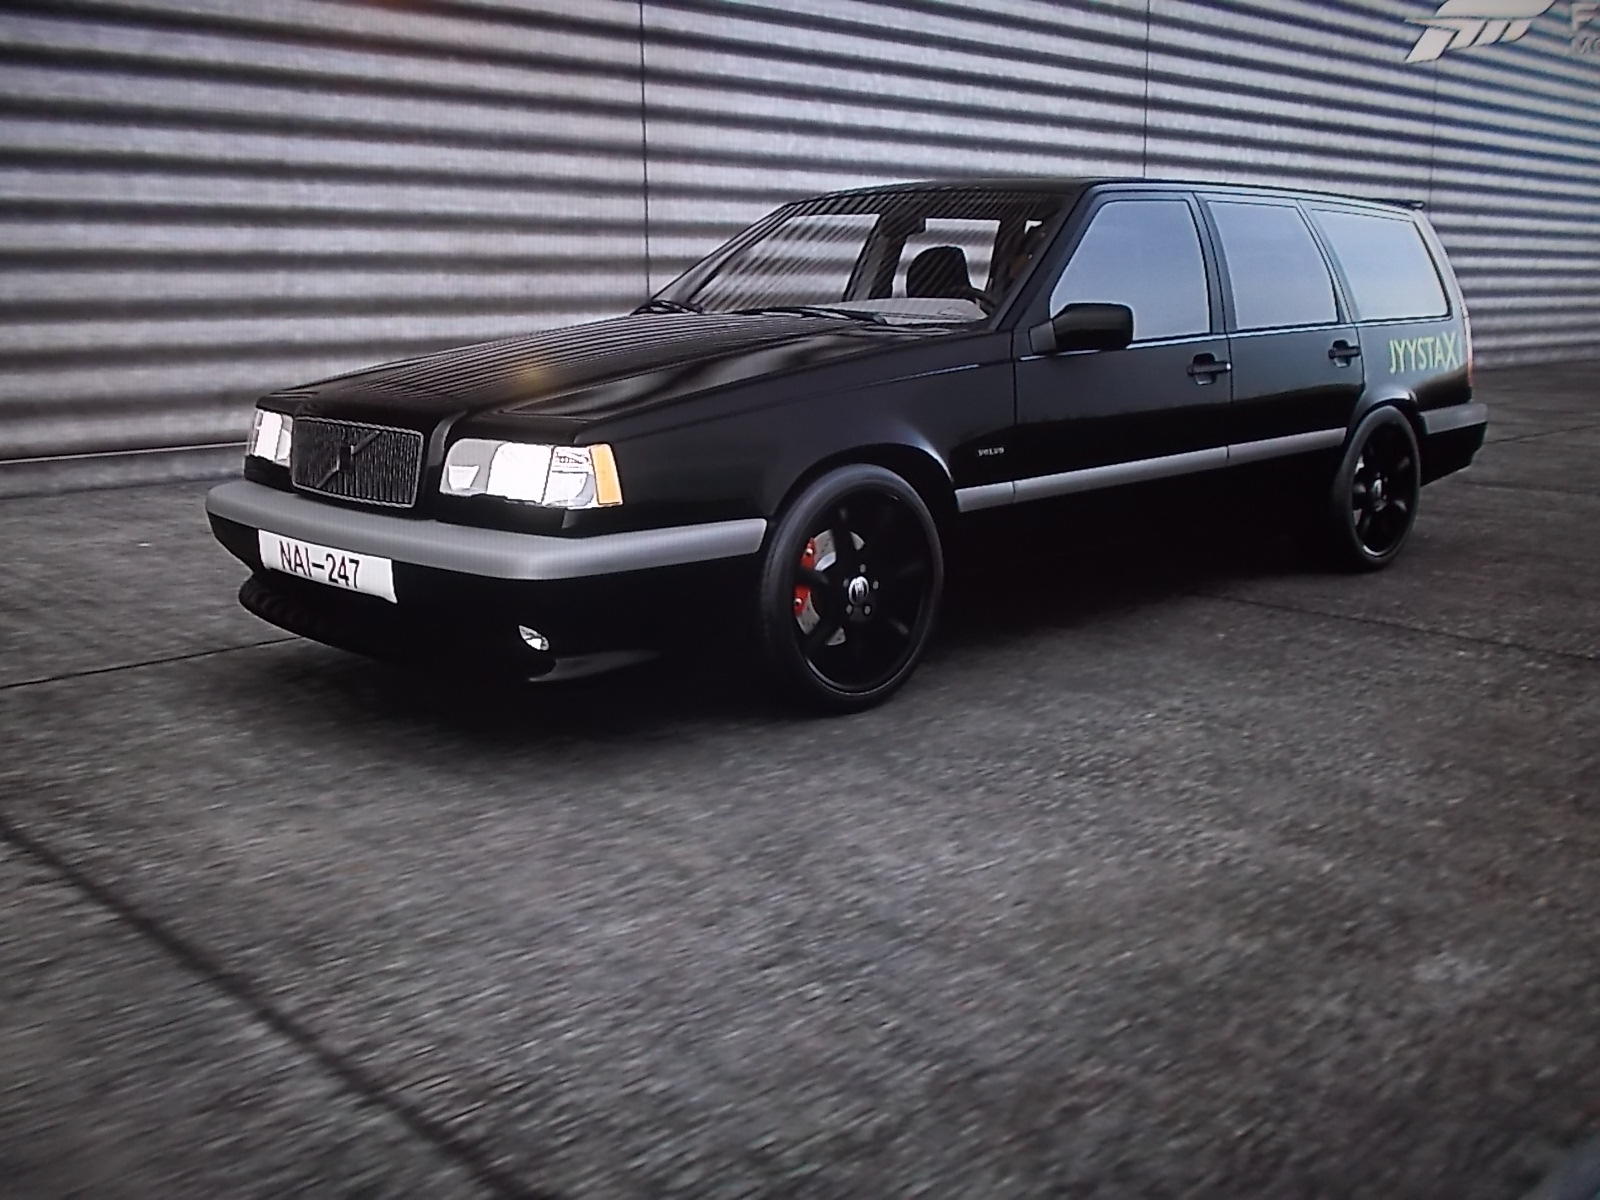 Musta Volvo kuvattuna viistosti edestäpäin.